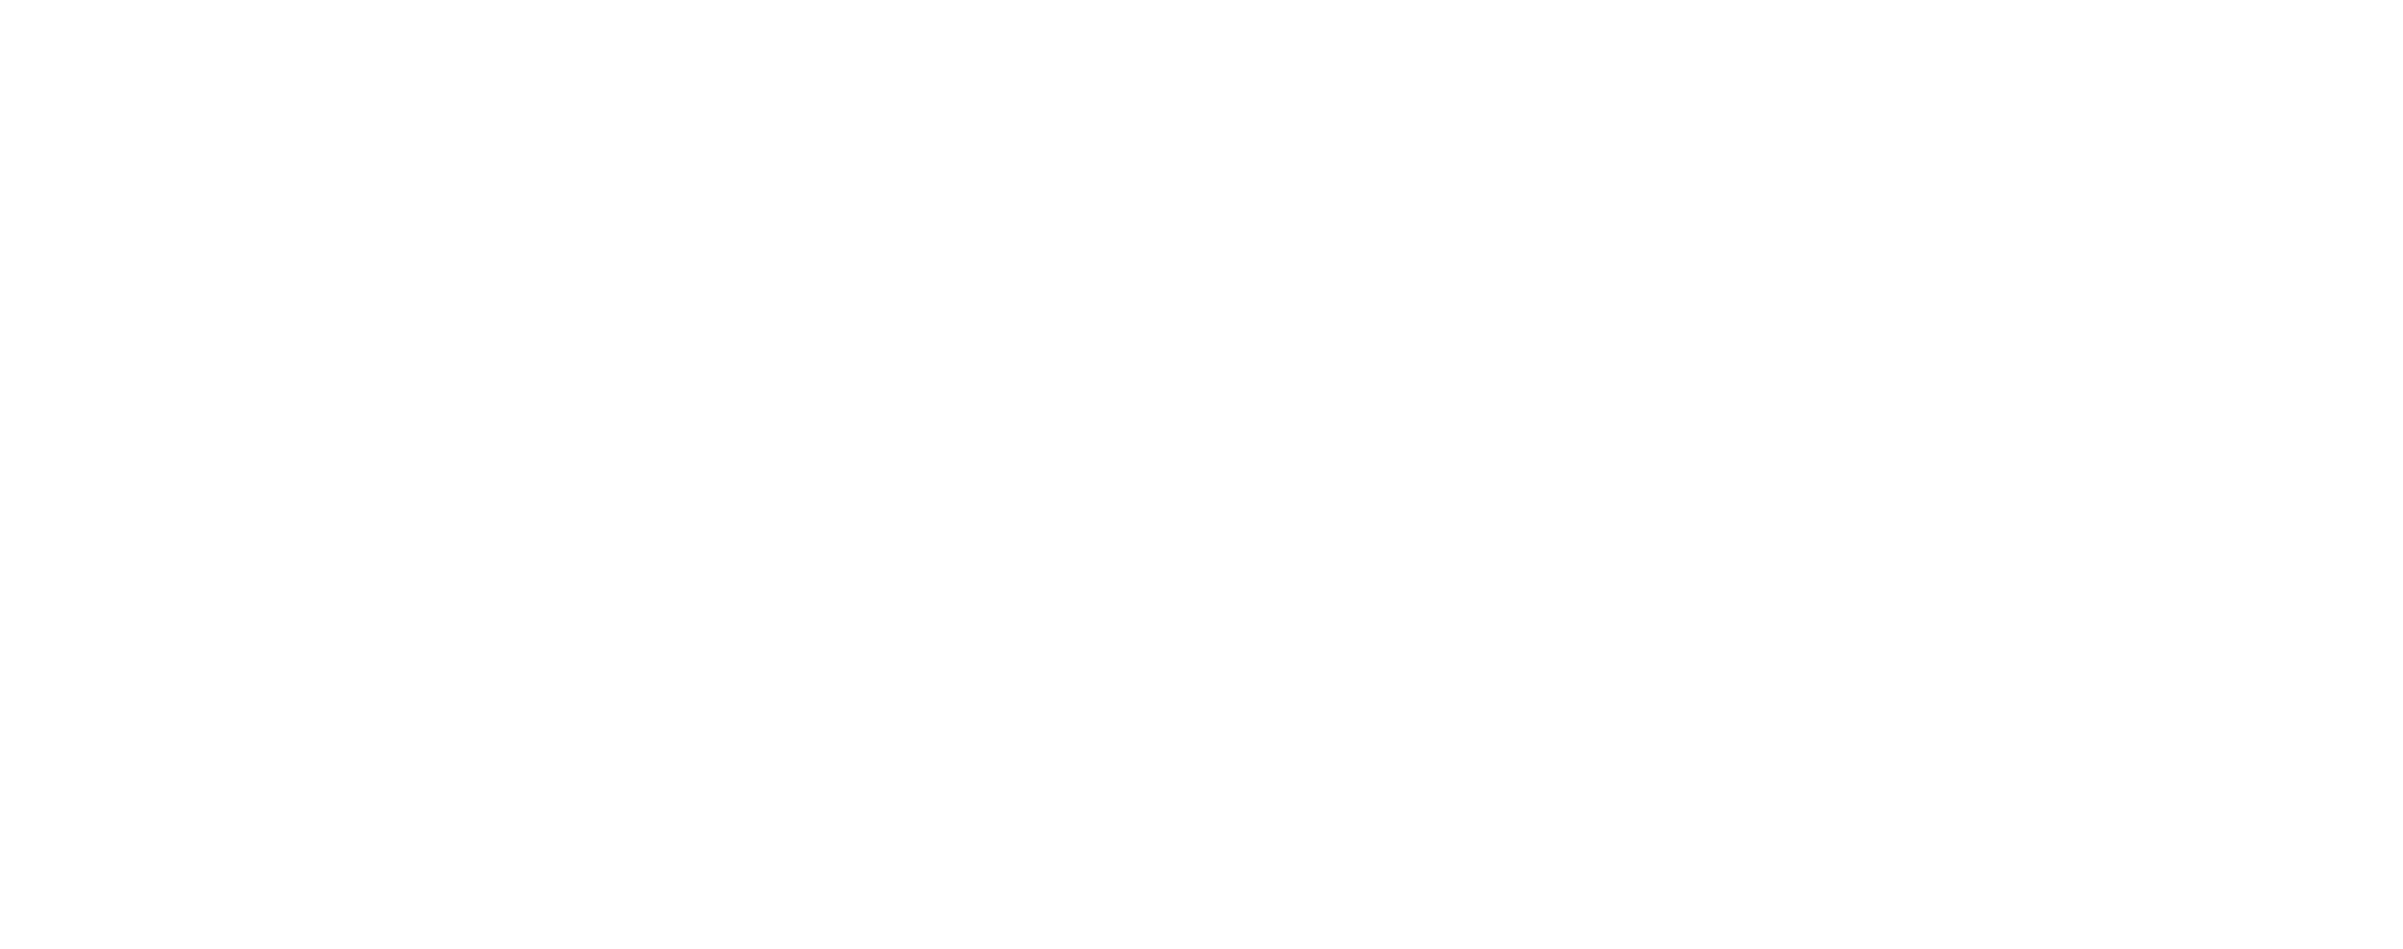 Harlem Cars